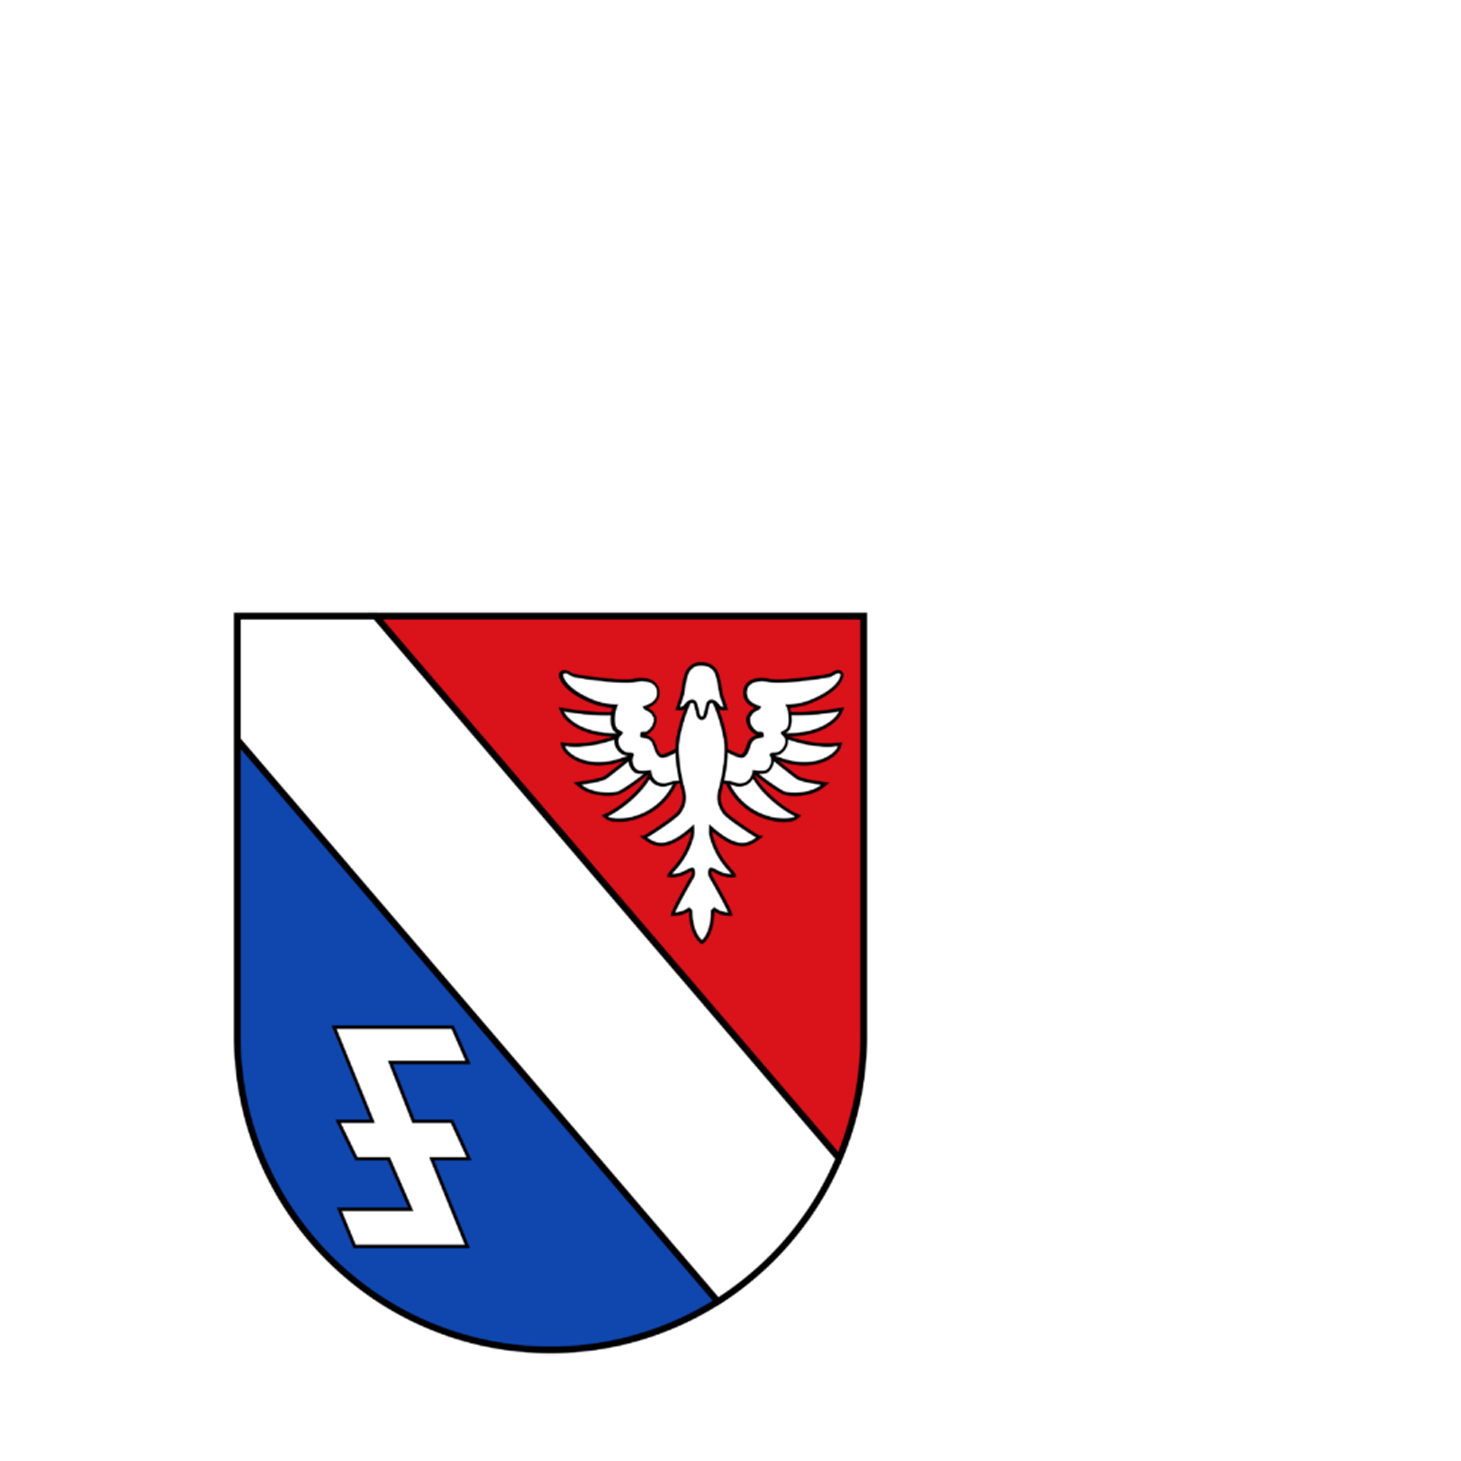 Wappen der Gemeinde Eppelborn - © Gemeinde Eppelborn